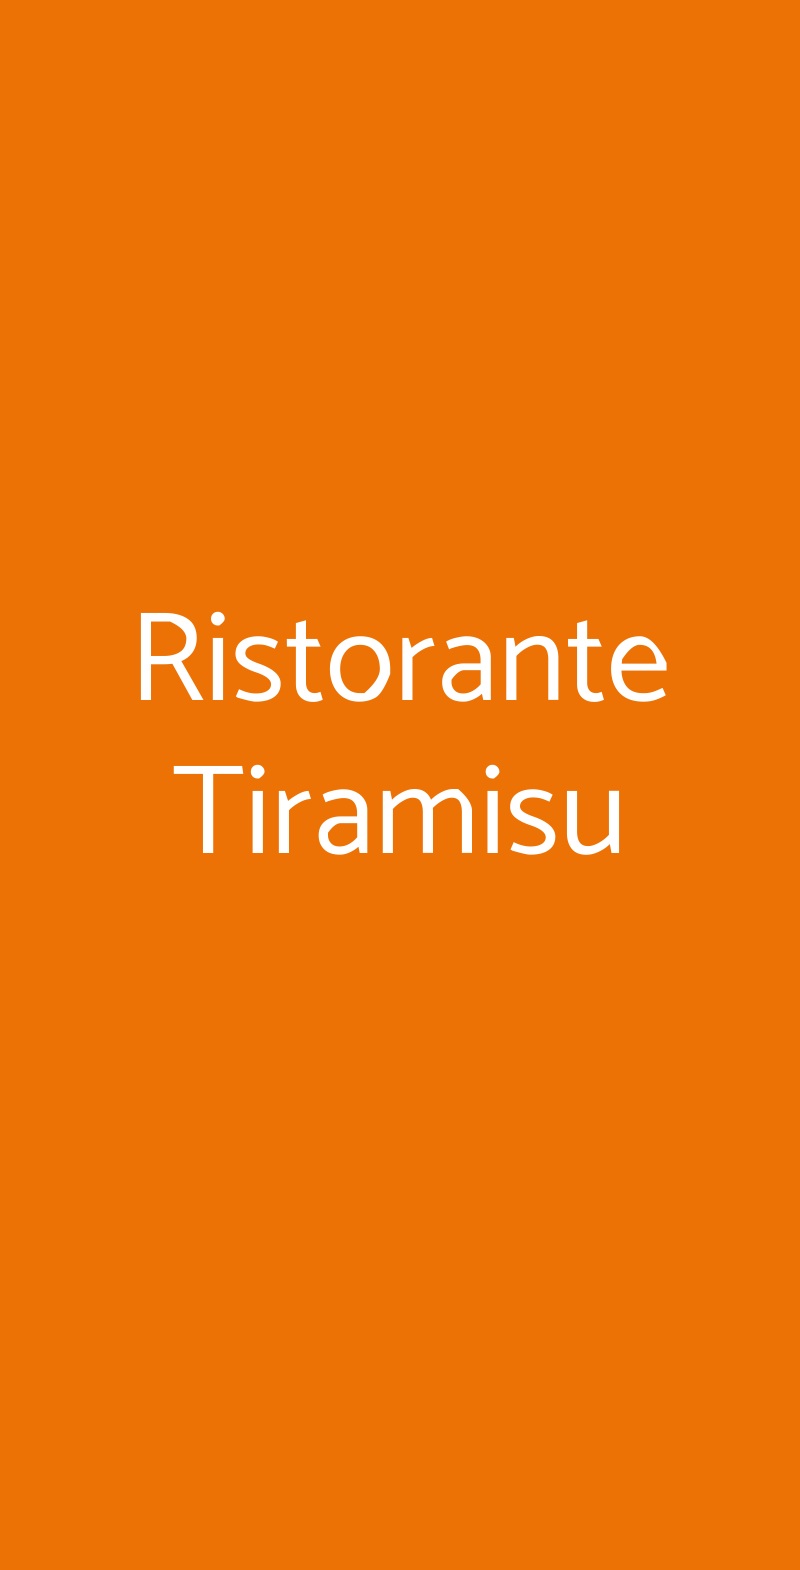 Ristorante Tiramisu Taormina menù 1 pagina